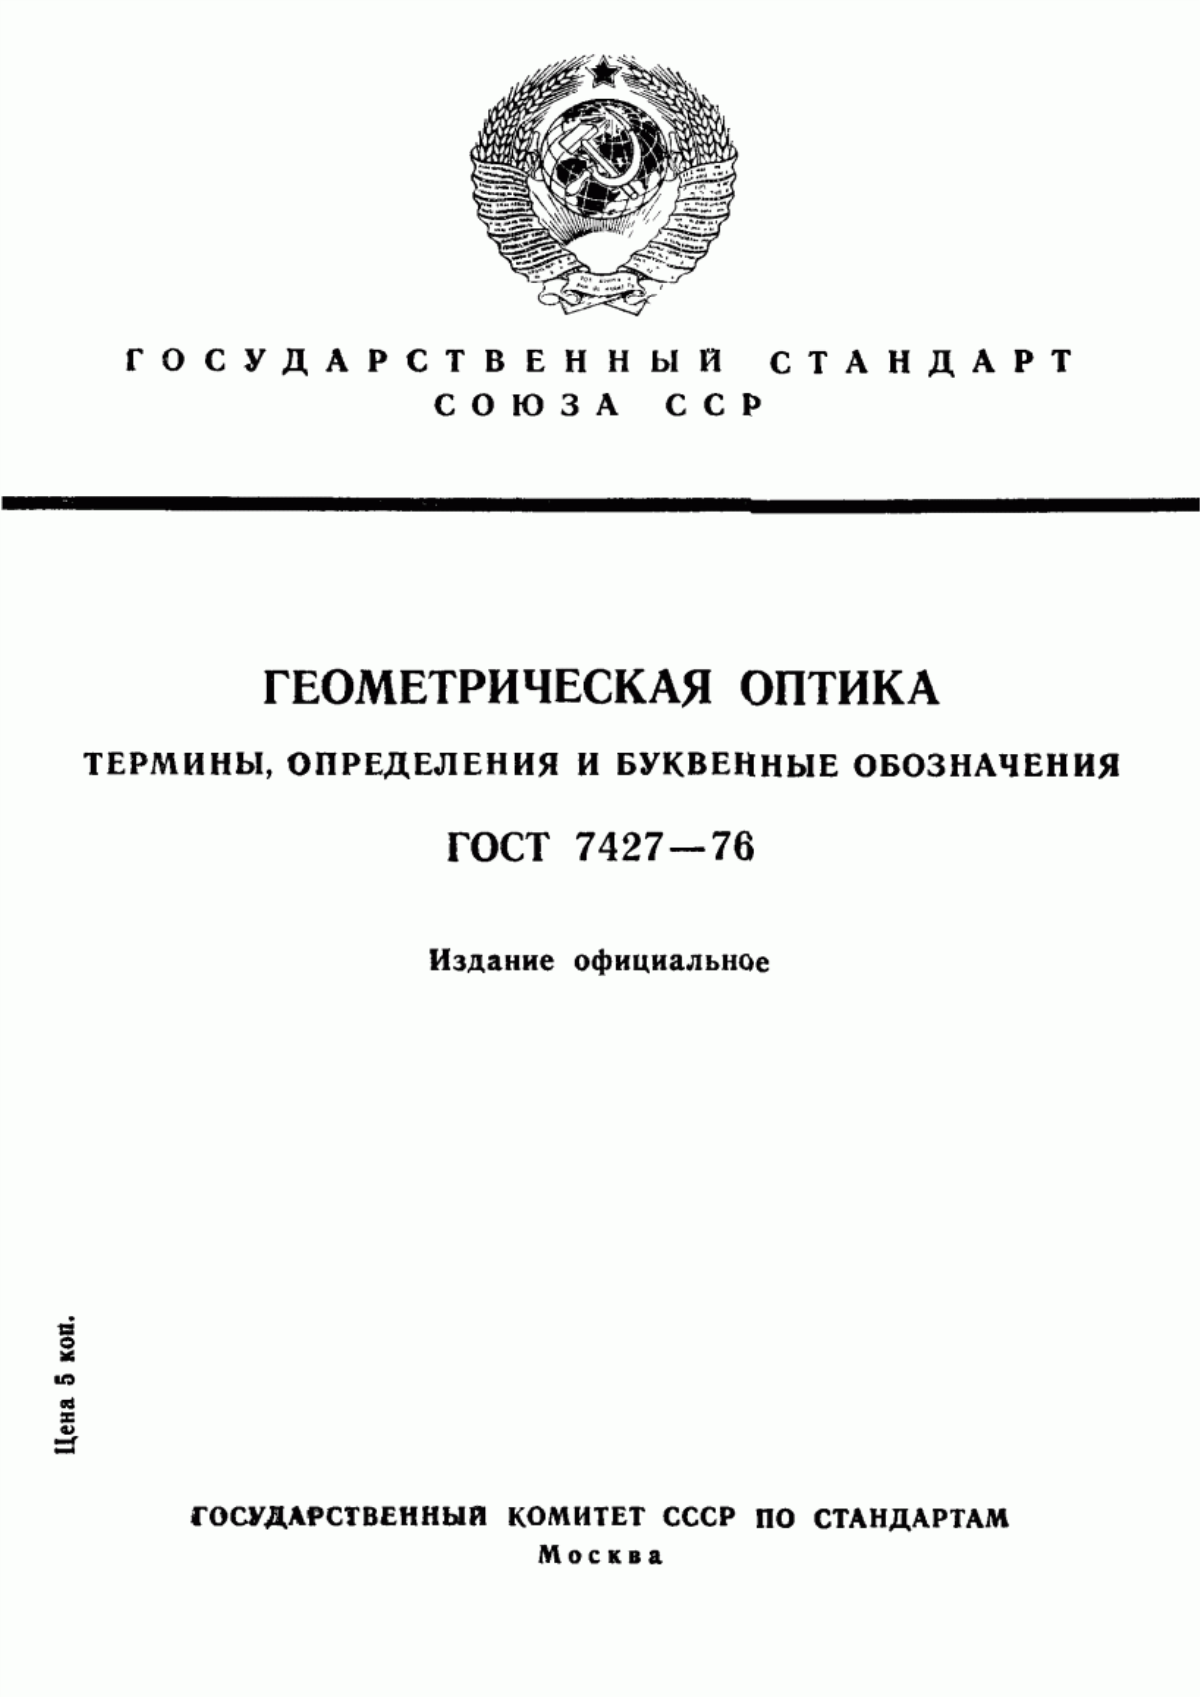 ГОСТ 7427-76 Геометрическая оптика. Термины, определения и буквенные обозначения